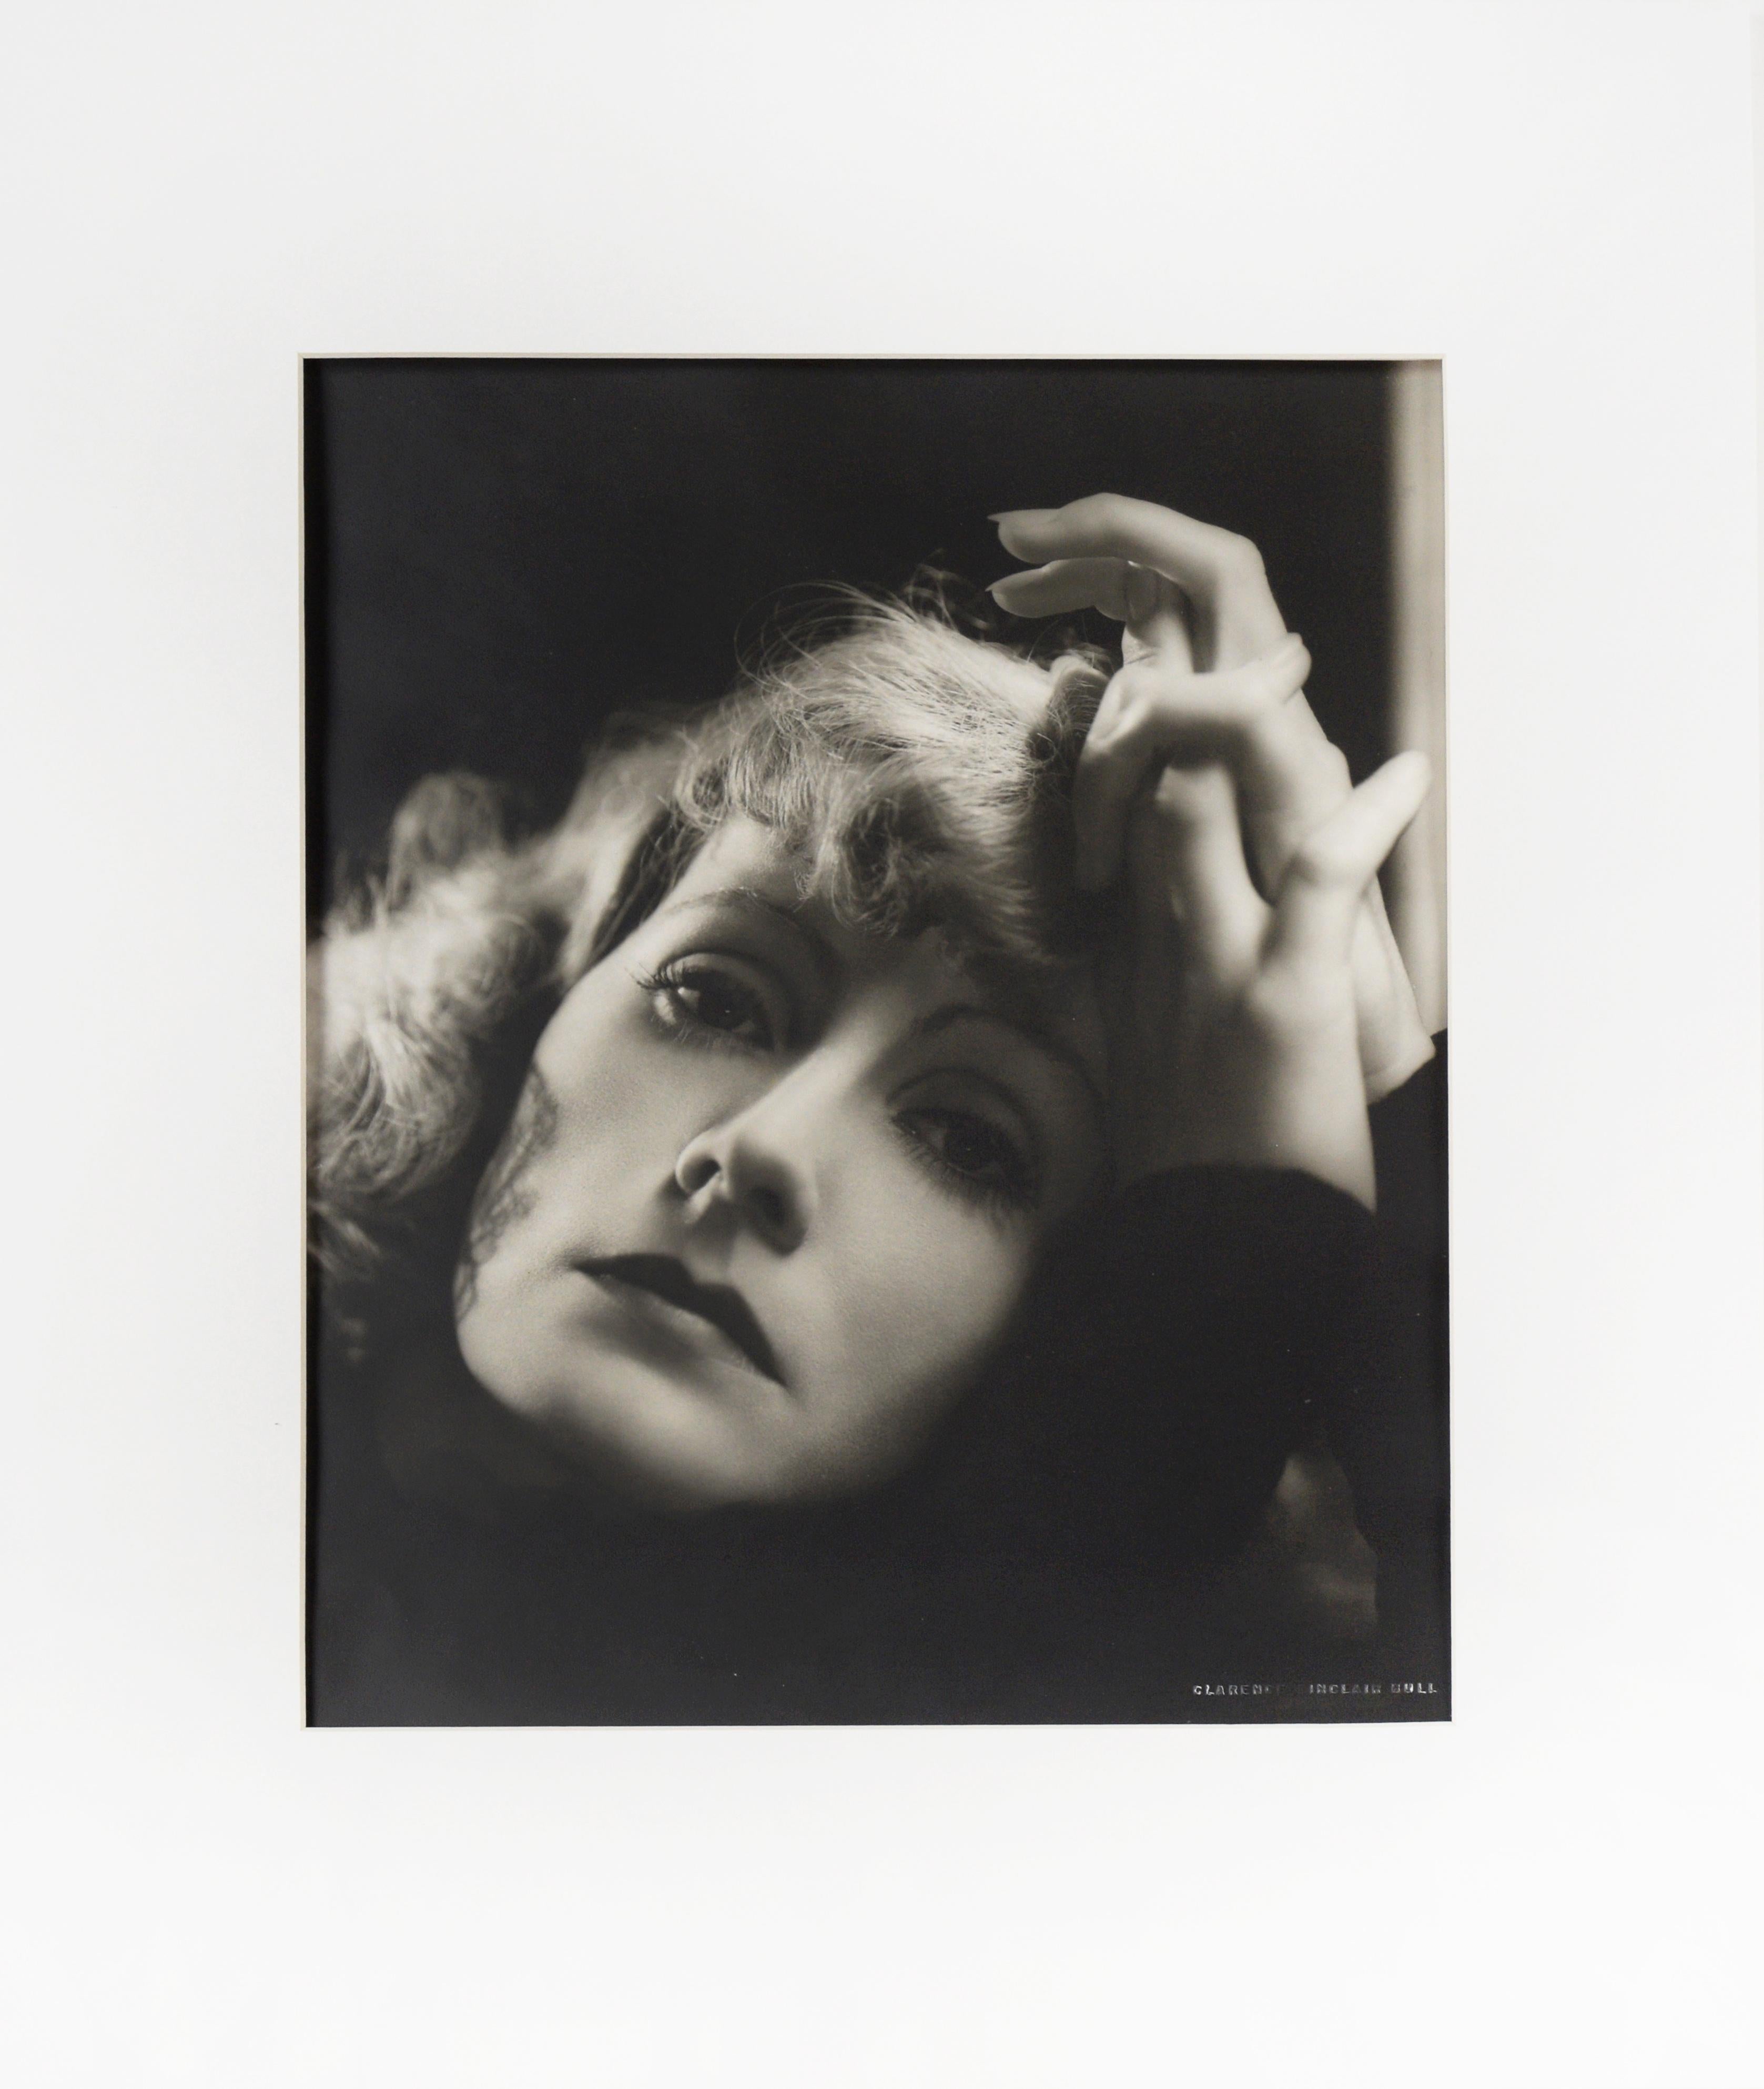 Greta Garbo "Her Rise And Fall #2" - 1931 Photographie de Clarence Sinclair Bull

 Photographie en noir et blanc de Clarence Sinclair Bull (américain, 1896-1979), finition mate, papier double épaisseur, représentant une prise de vue de l'actrice